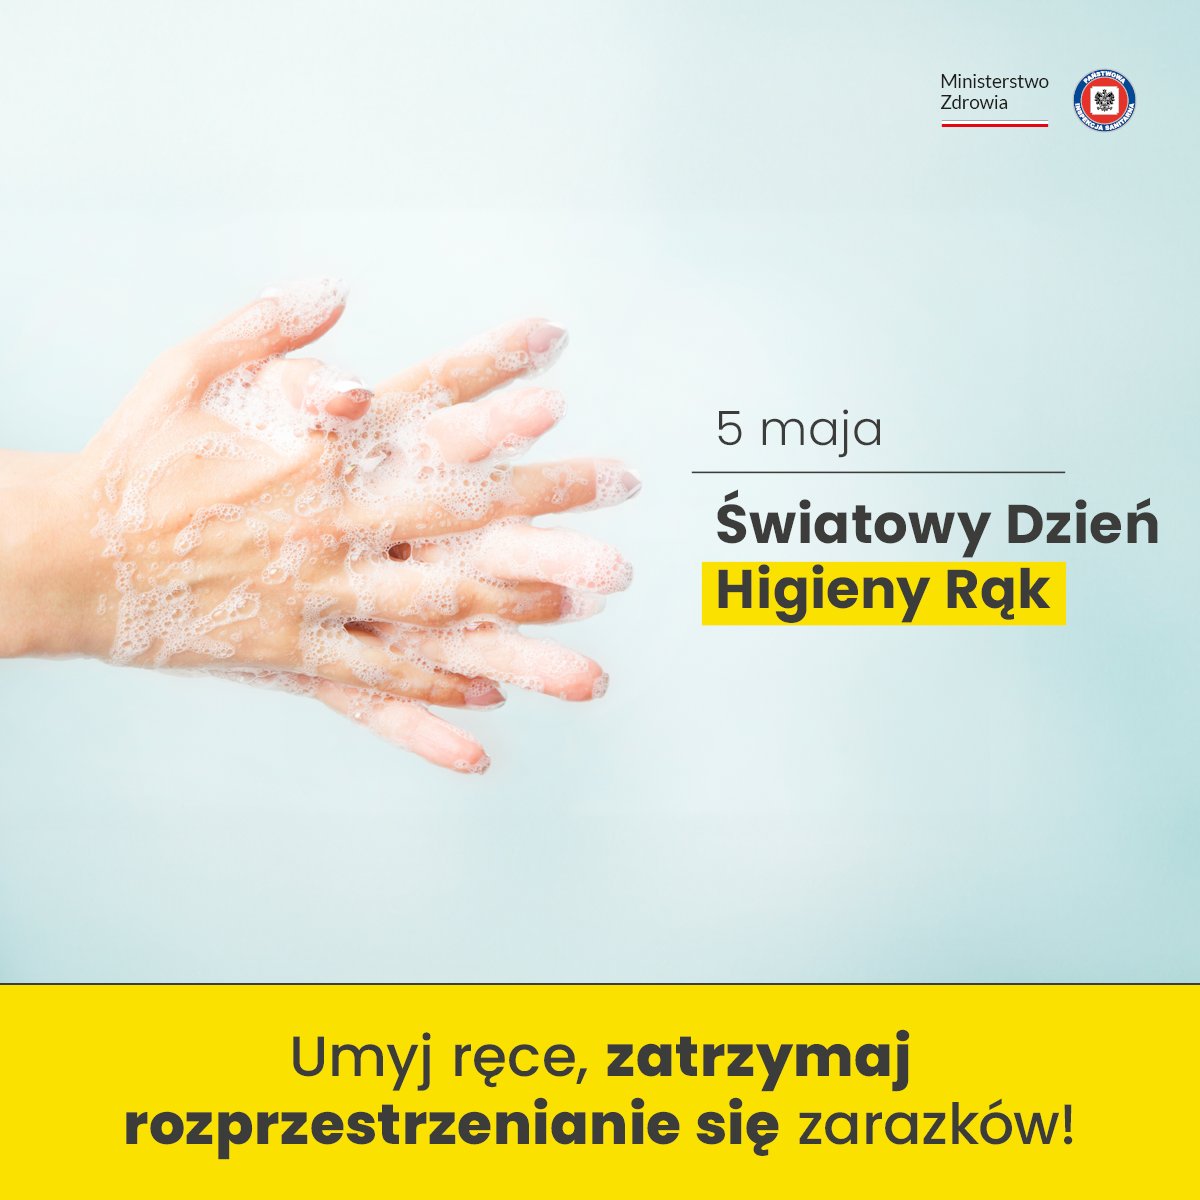 🗓️5 maja obchodzimy Światowy Dzień Higieny Rąk - święto zapoczątkowane w 2005 roku przez @WHO. 🚿Higiena rąk pomaga ratować życie – twoje, bliskich lub osób najbardziej bezbronnych w społeczeństwie. Wystarczy kilkadziesiąt sekund myć ręce, by oczyścić je z 90% bakterii.🦠🦠